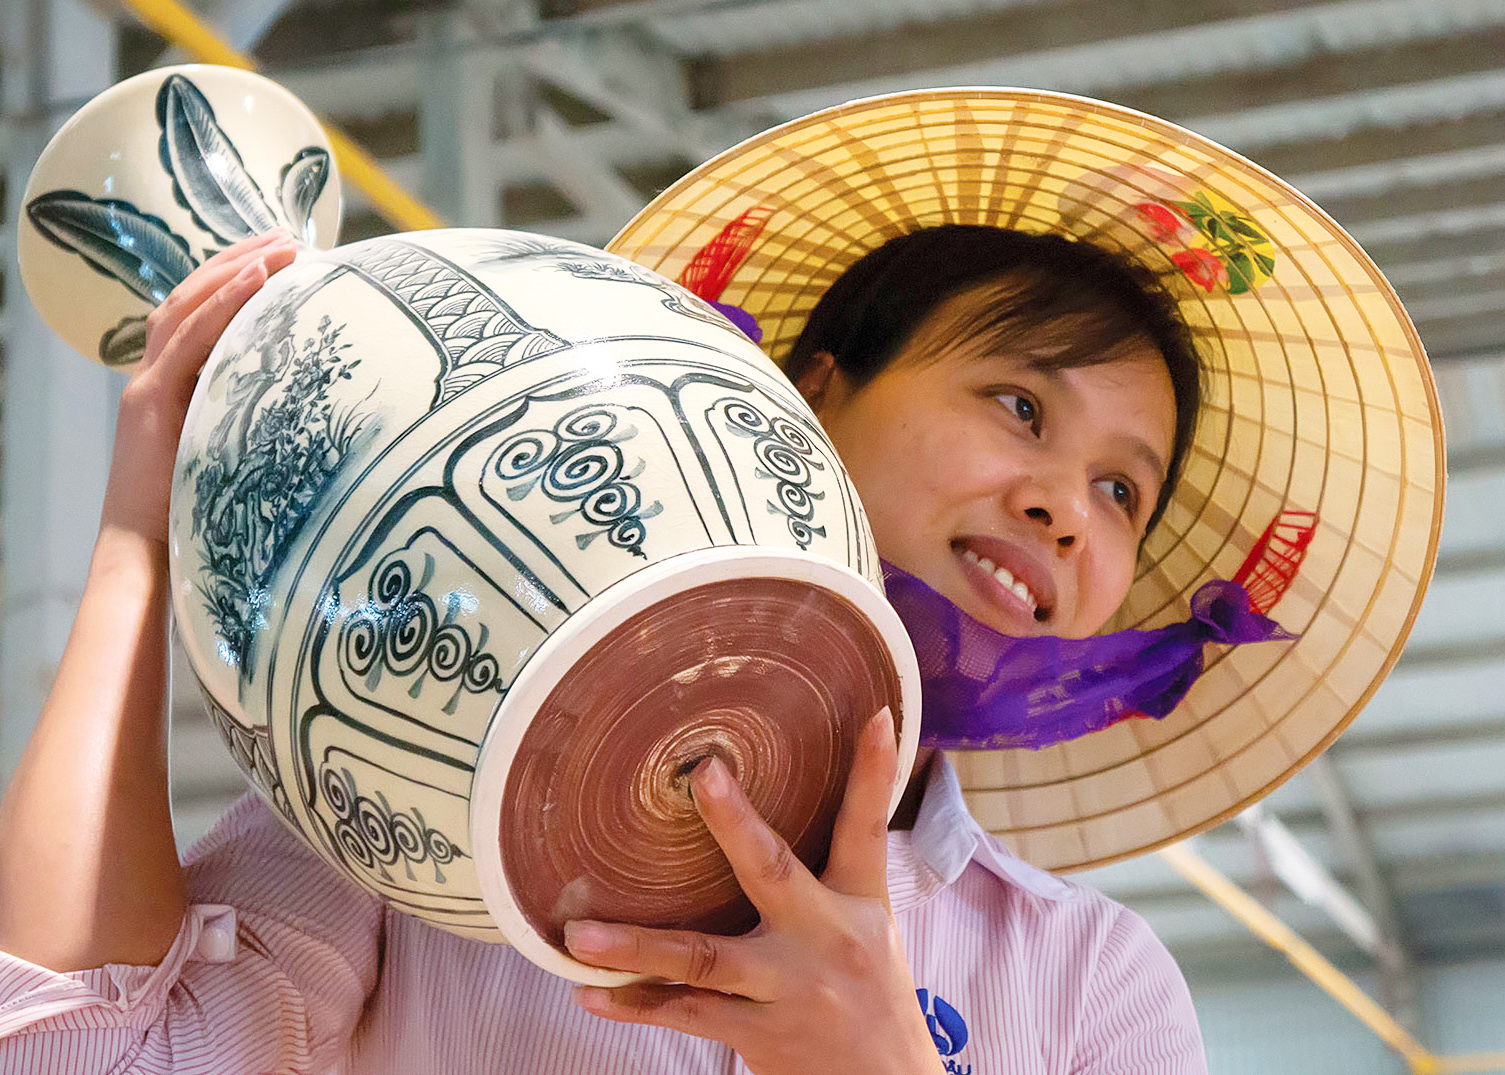 Làng nghề làm gốm Chu Đậu đang là điểm du lịch hấp dẫn. Ảnh: Tin nhanh Chứng Khoán